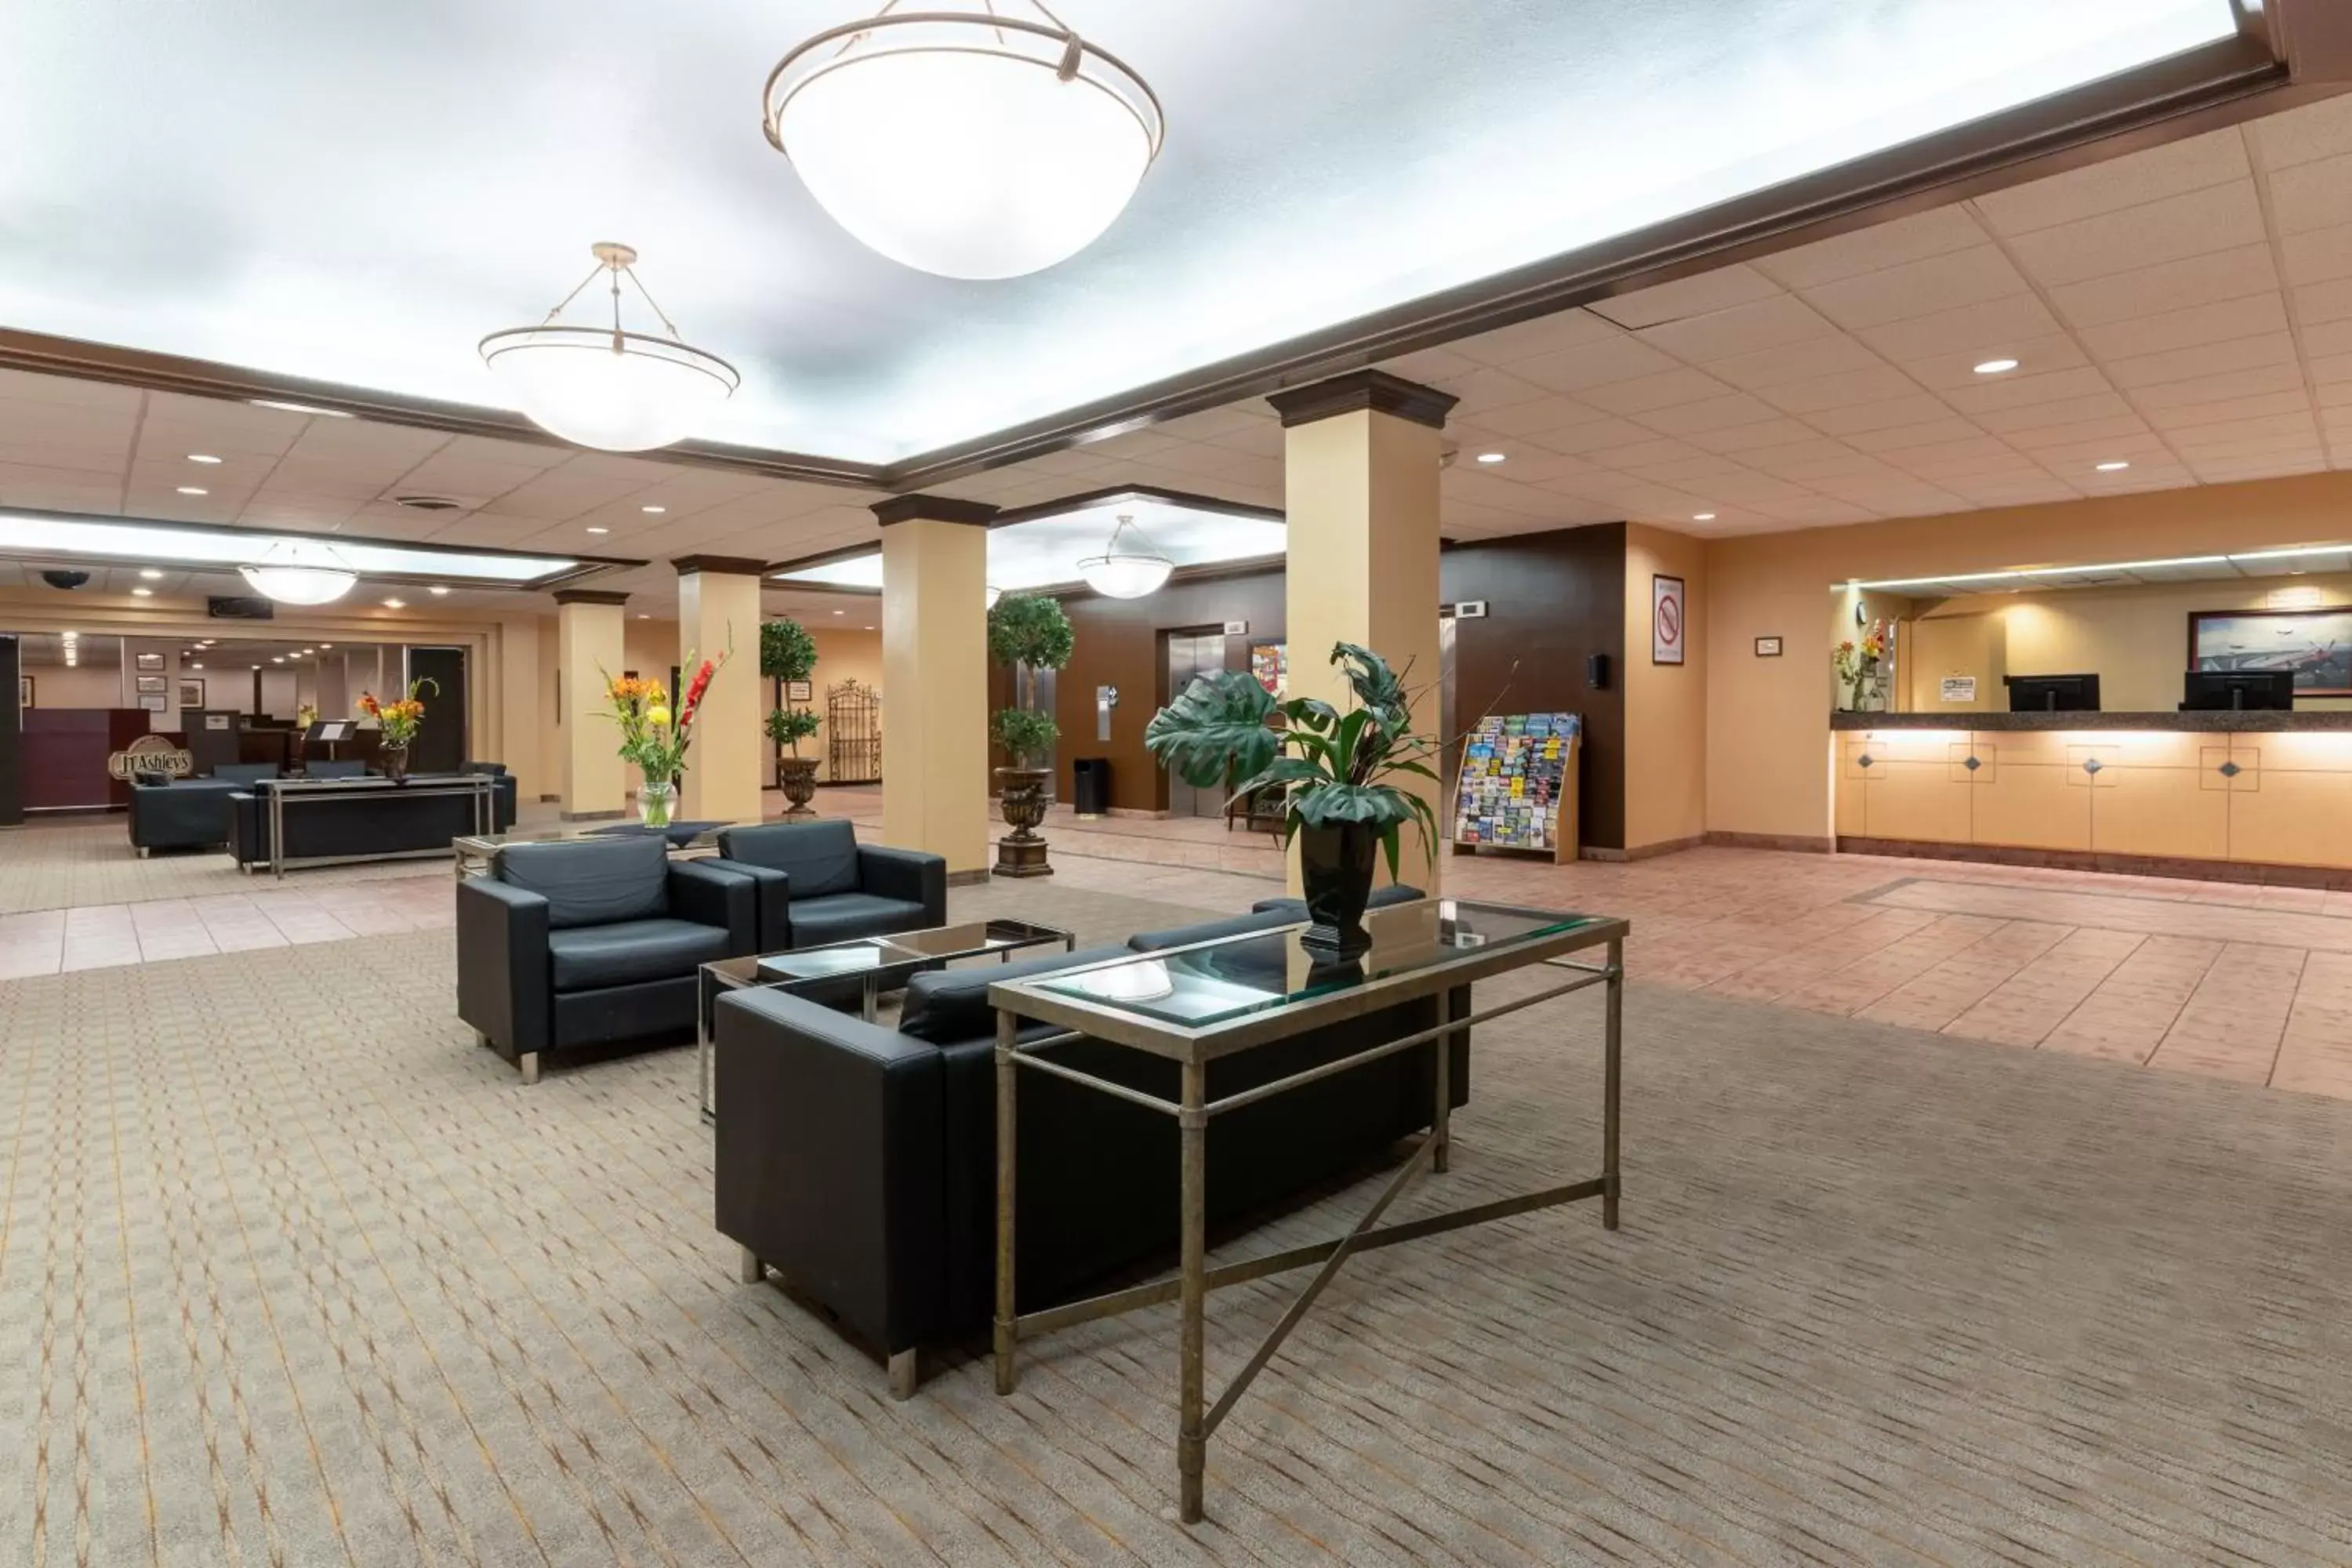 Lobby or reception, Lobby/Reception in Ramada by Wyndham Reno Hotel & Casino